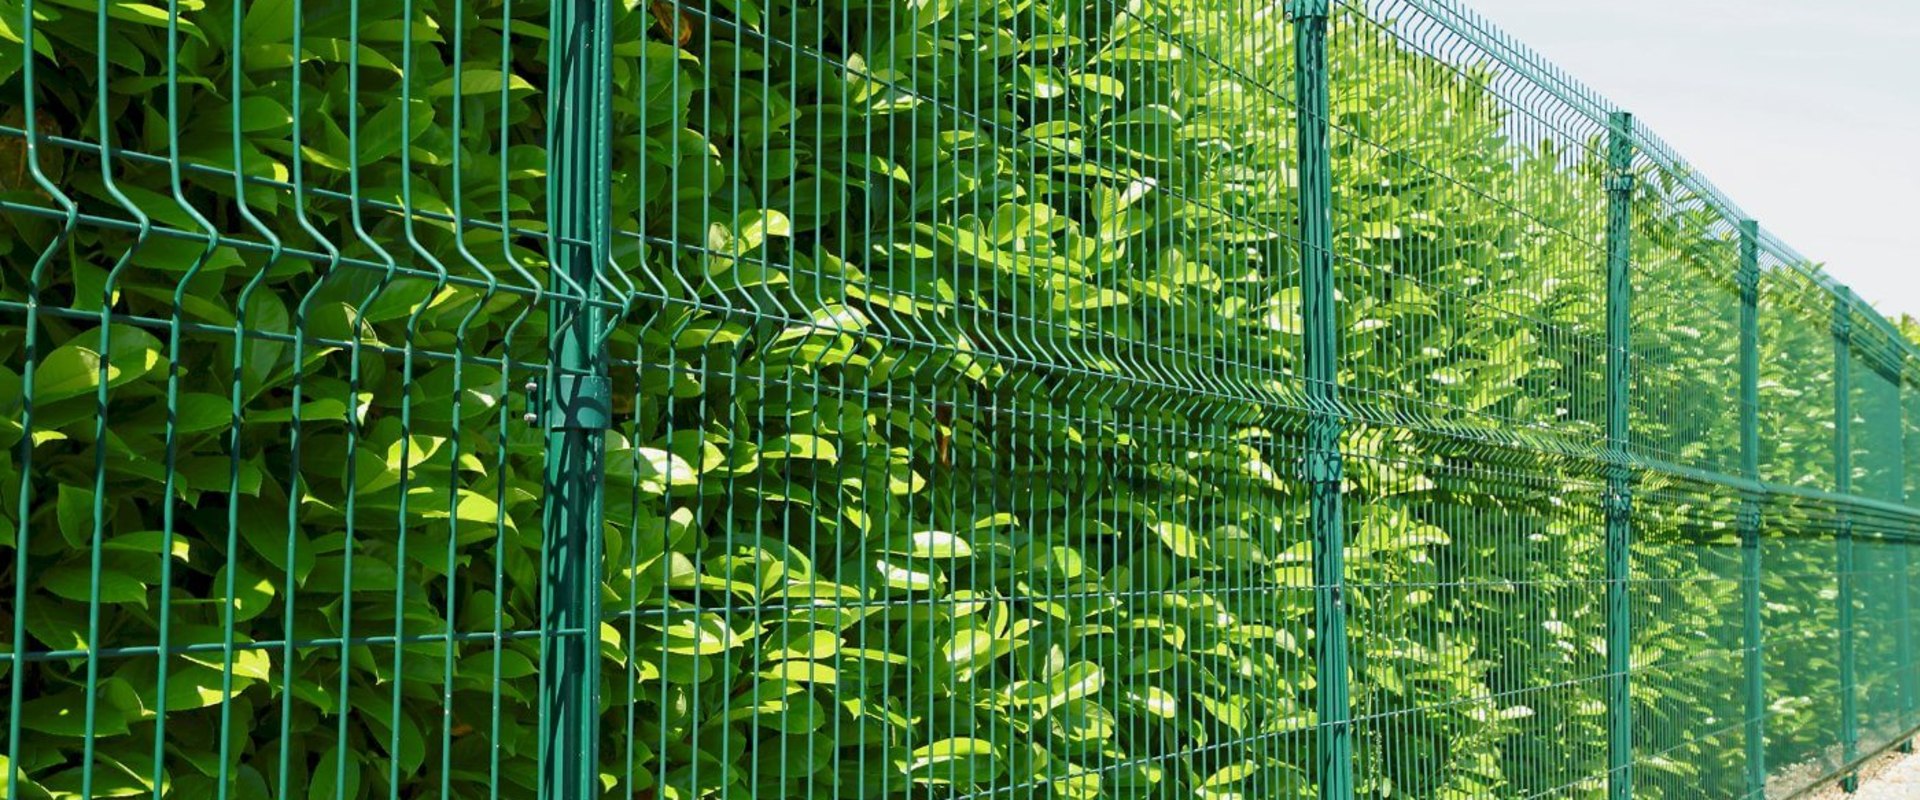 Tout ce que vous devez savoir sur les clôtures à mailles losangées galvanisées vertes